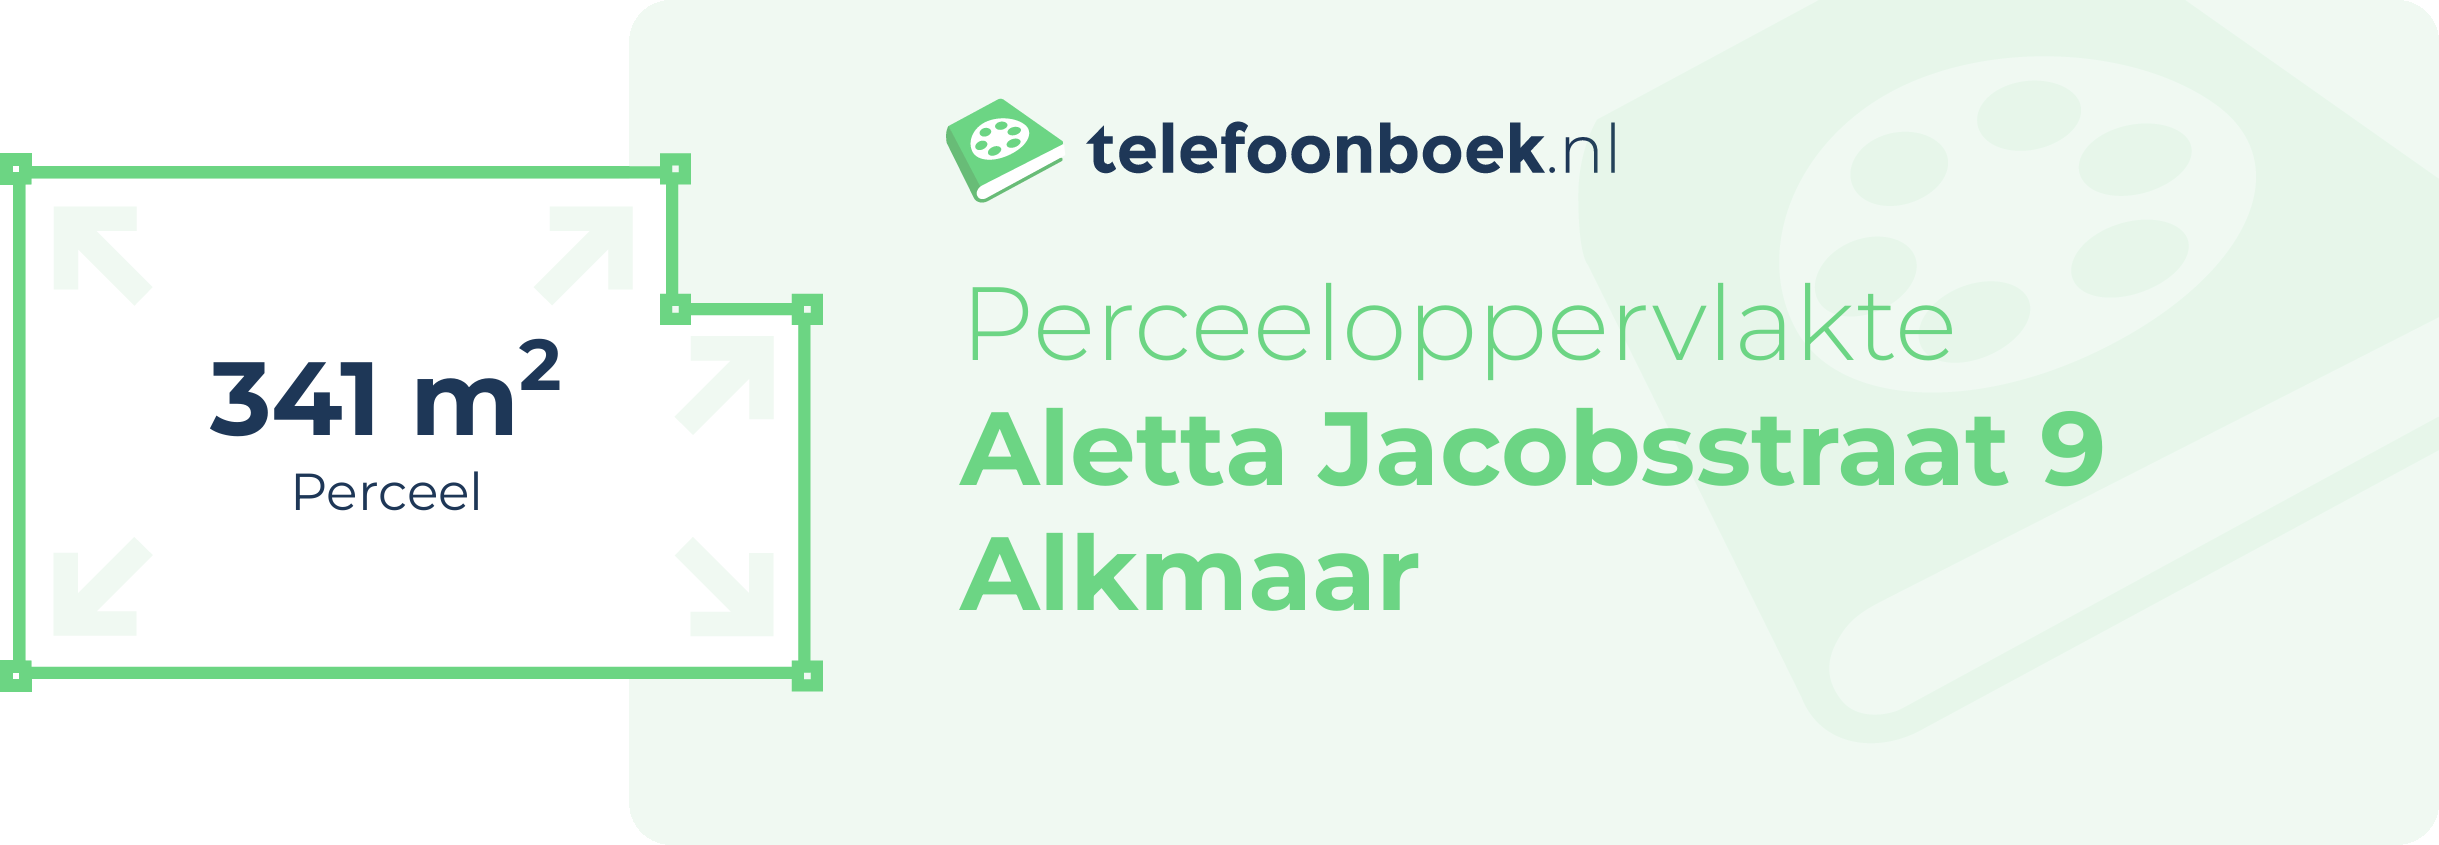 Perceeloppervlakte Aletta Jacobsstraat 9 Alkmaar